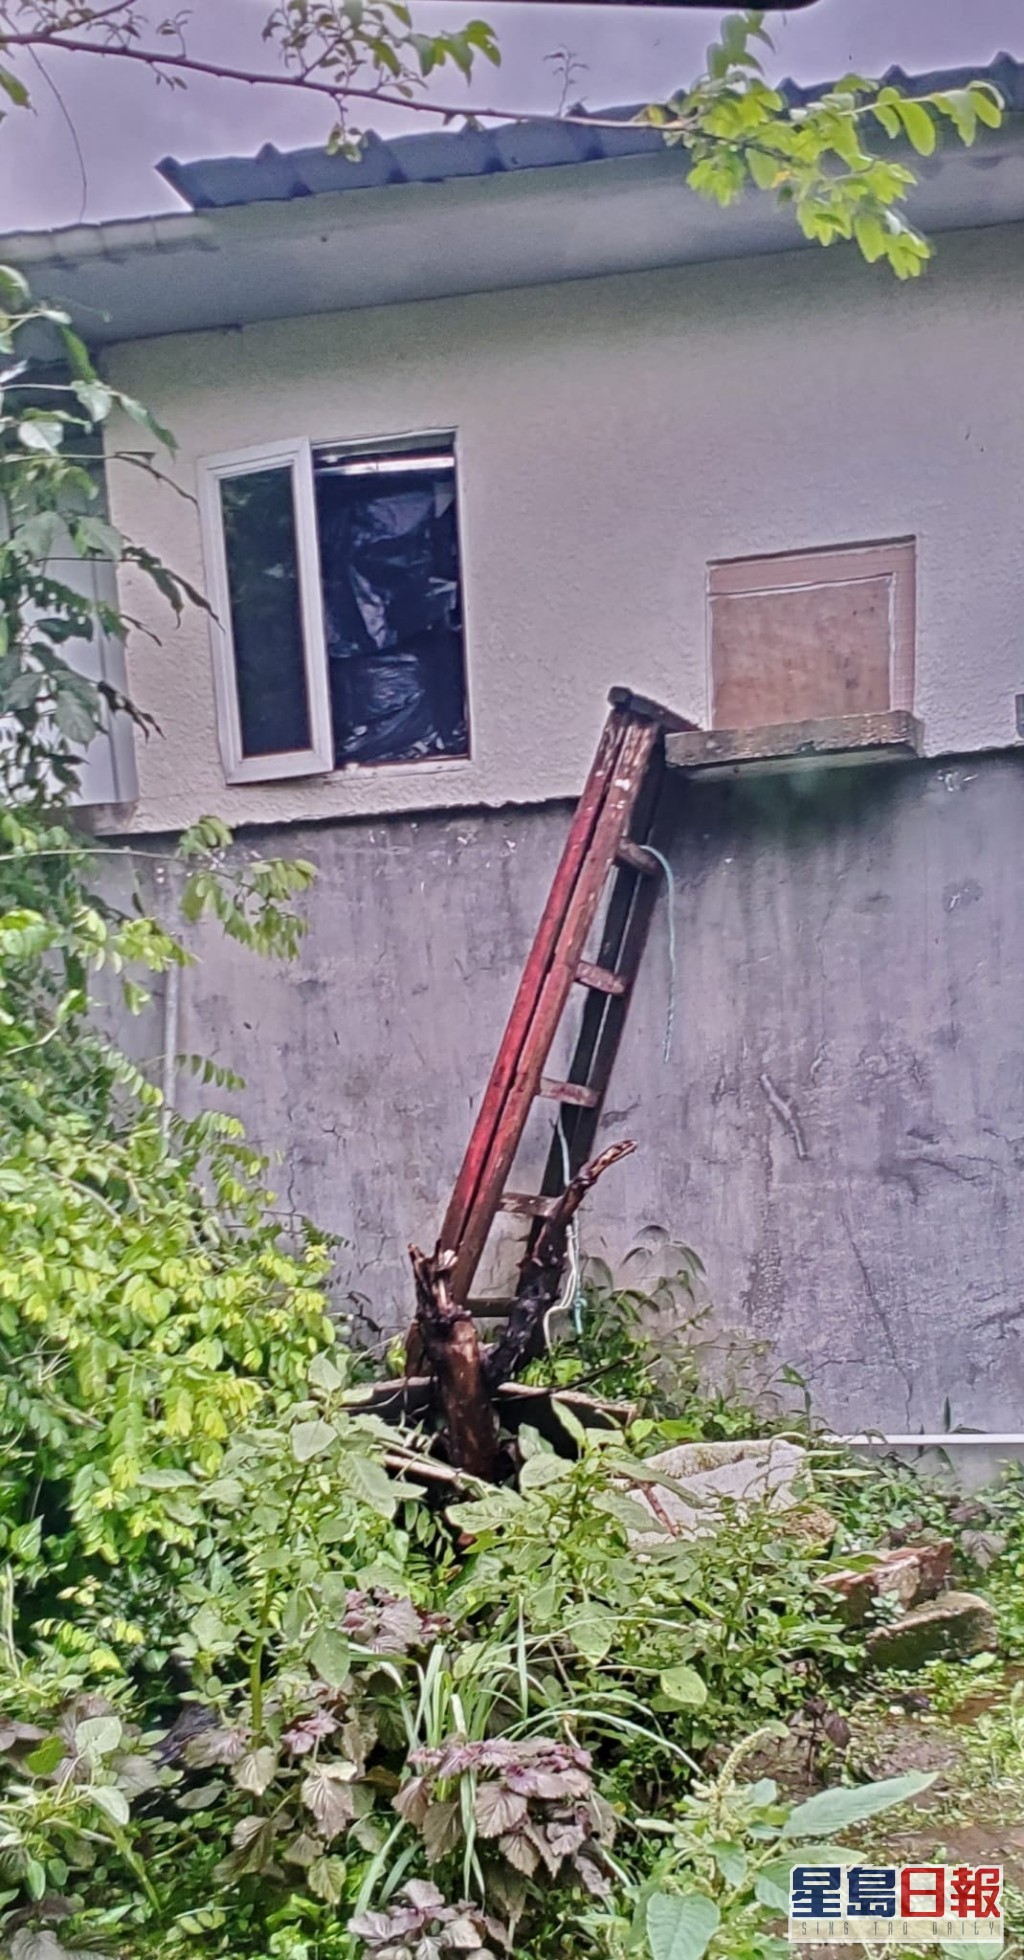 事後發現有一把約9呎長木梯及一支鐵通，相信賊人自備木梯爬高，並以鐵通撬開窗戶潛入爆竊。資料圖片